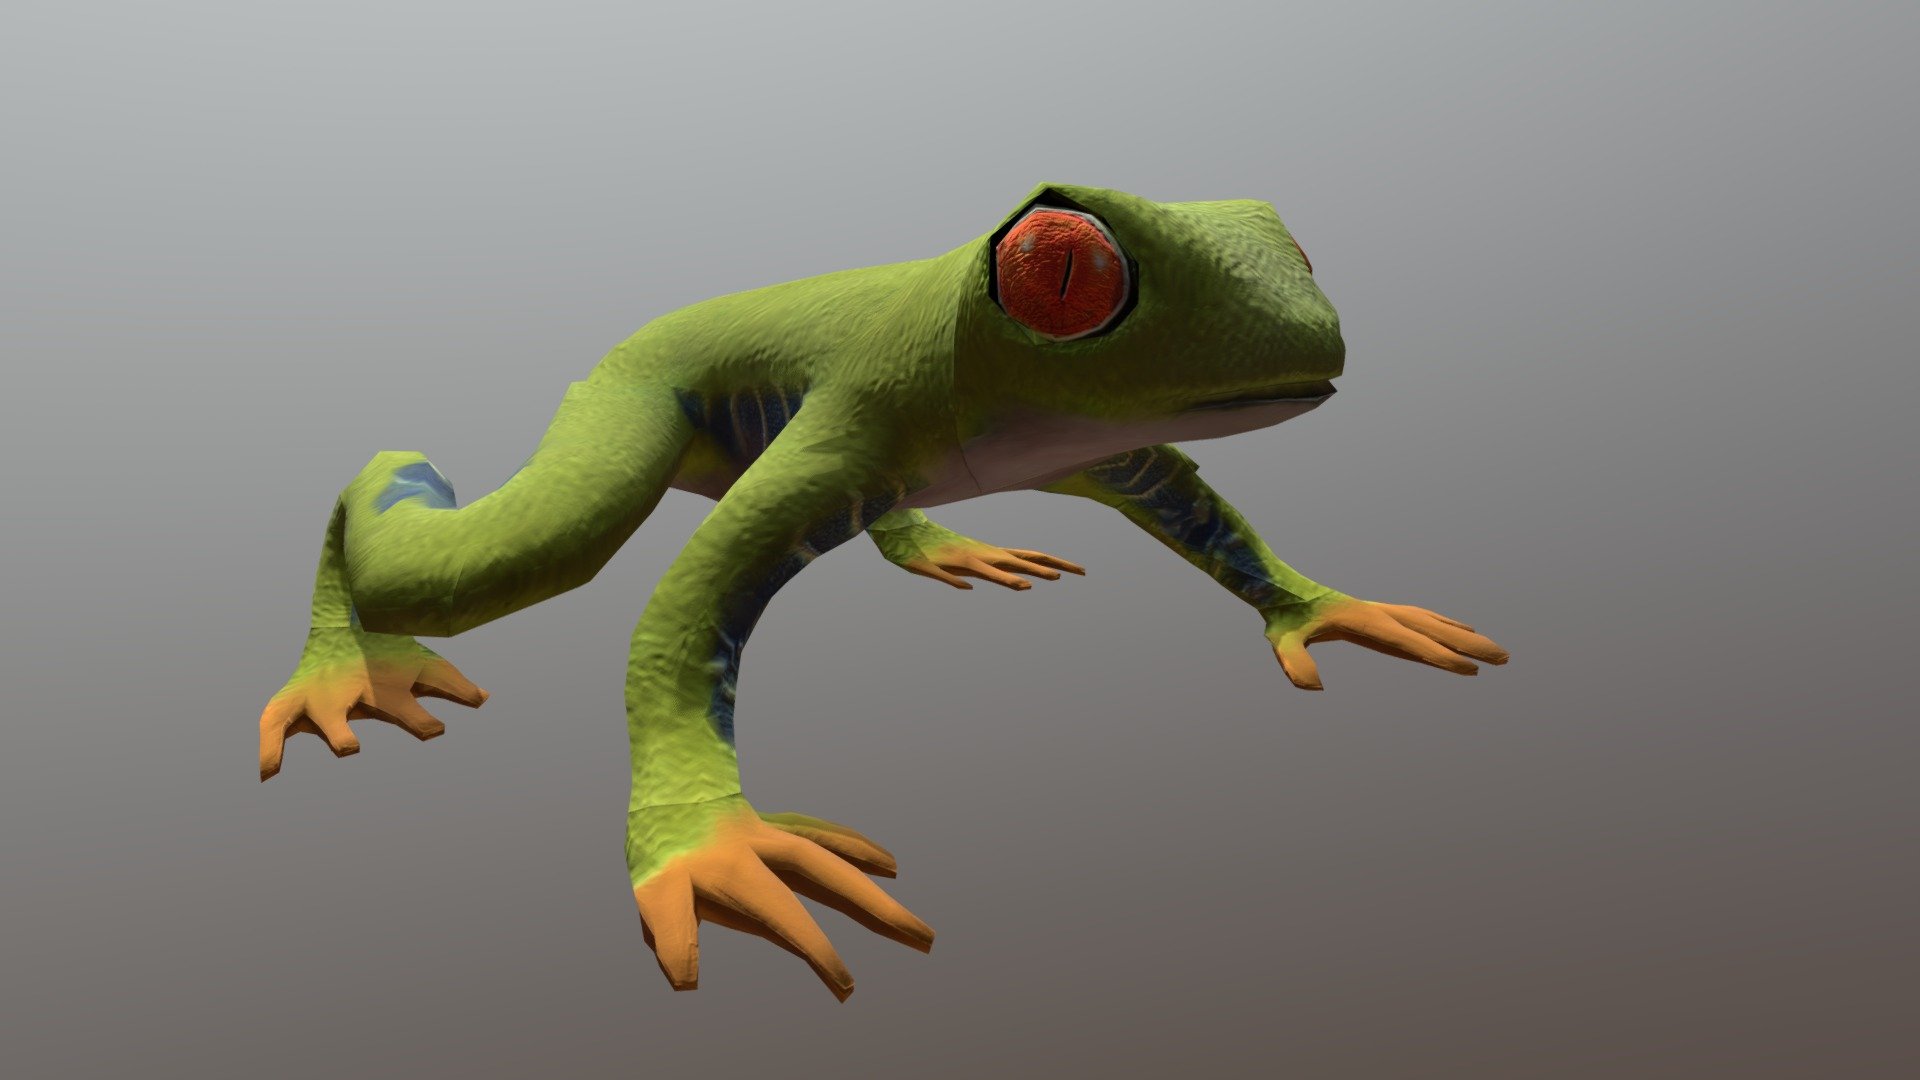 Green Frog - Buy Royalty Free 3D model by 3dlowpoly [34de7b1 ...